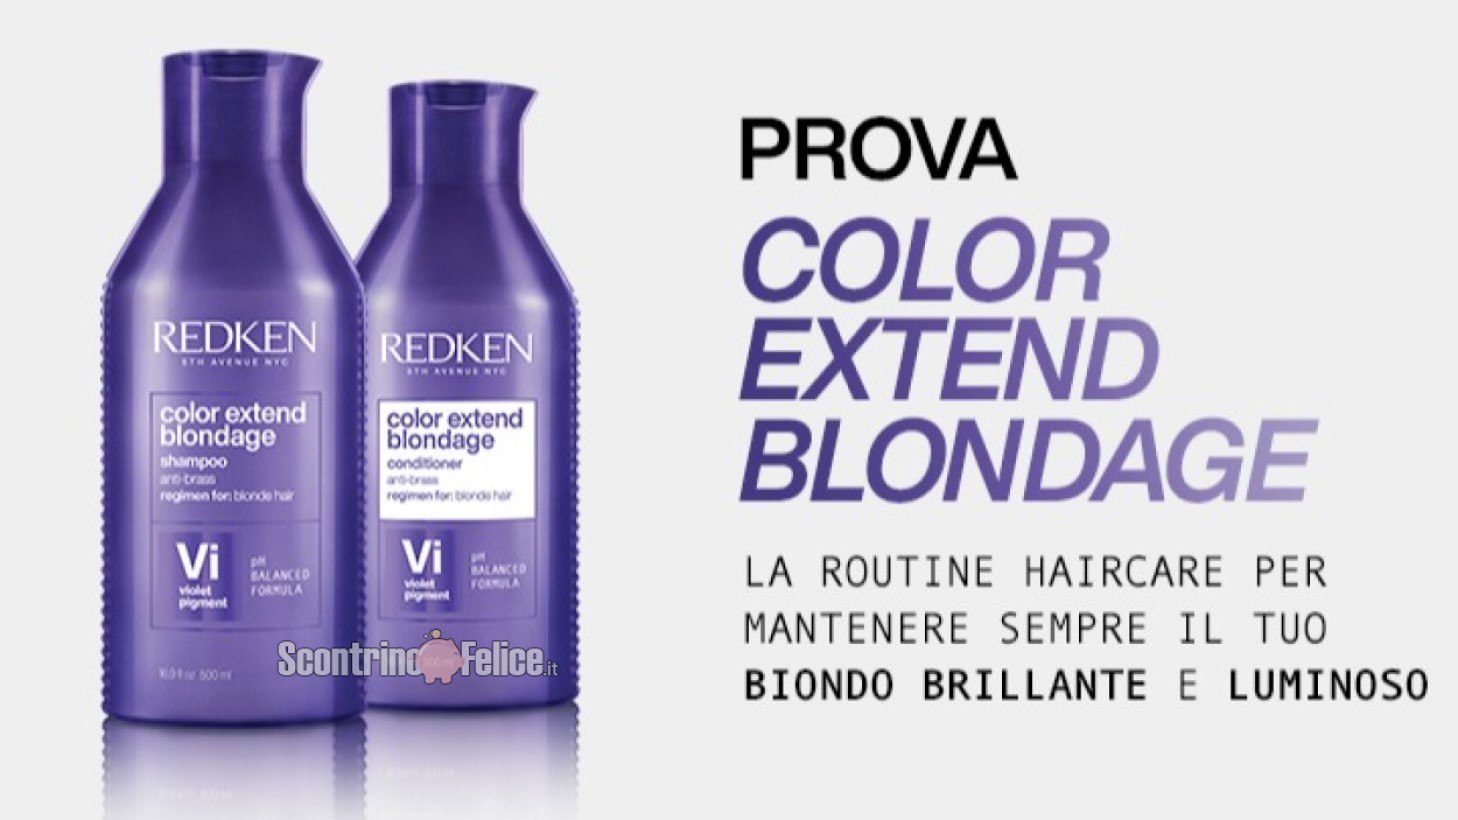 Campioni omaggio Shampoo e Balsamo Color Extend Blondage Redken : richiedili subito!